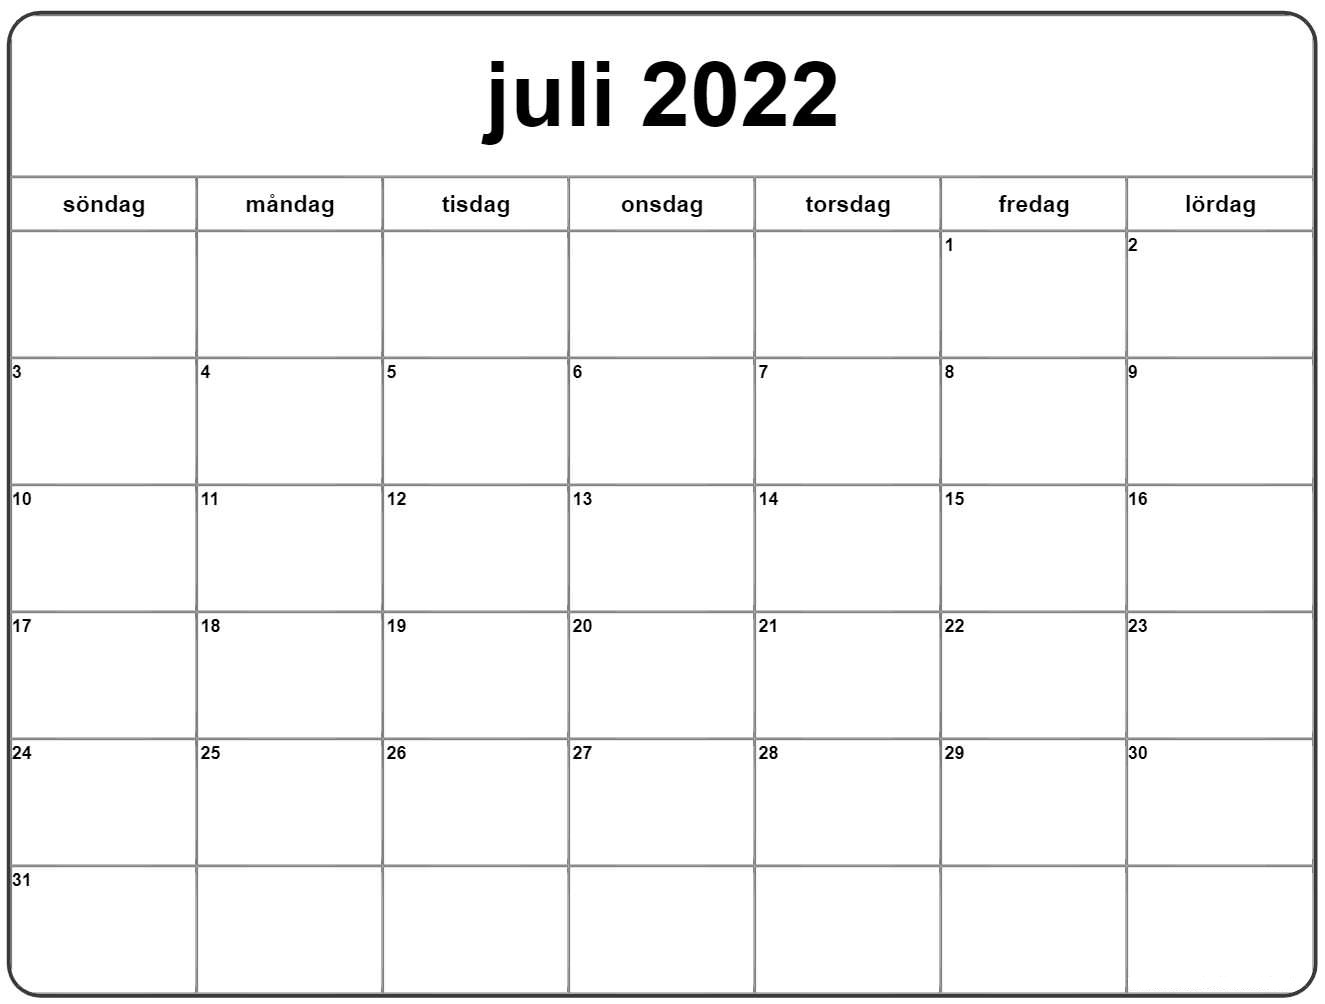 Juli 2022 Kalender Zum Ausdrucken